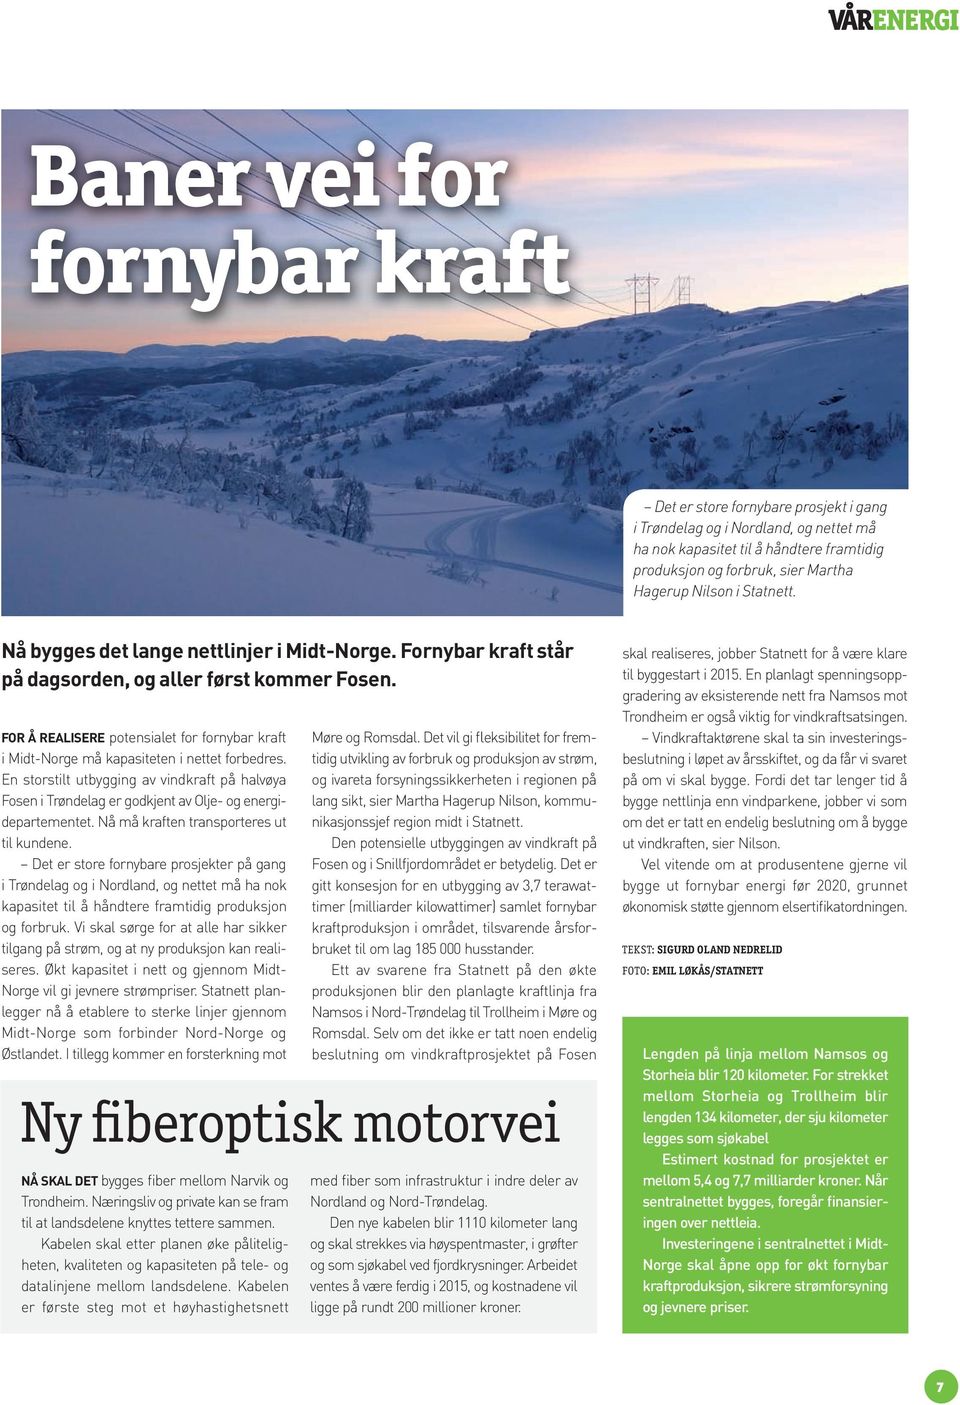 FOR Å REALISERE potensialet for fornybar kraft i Midt-Norge må kapasiteten i nettet forbedres.